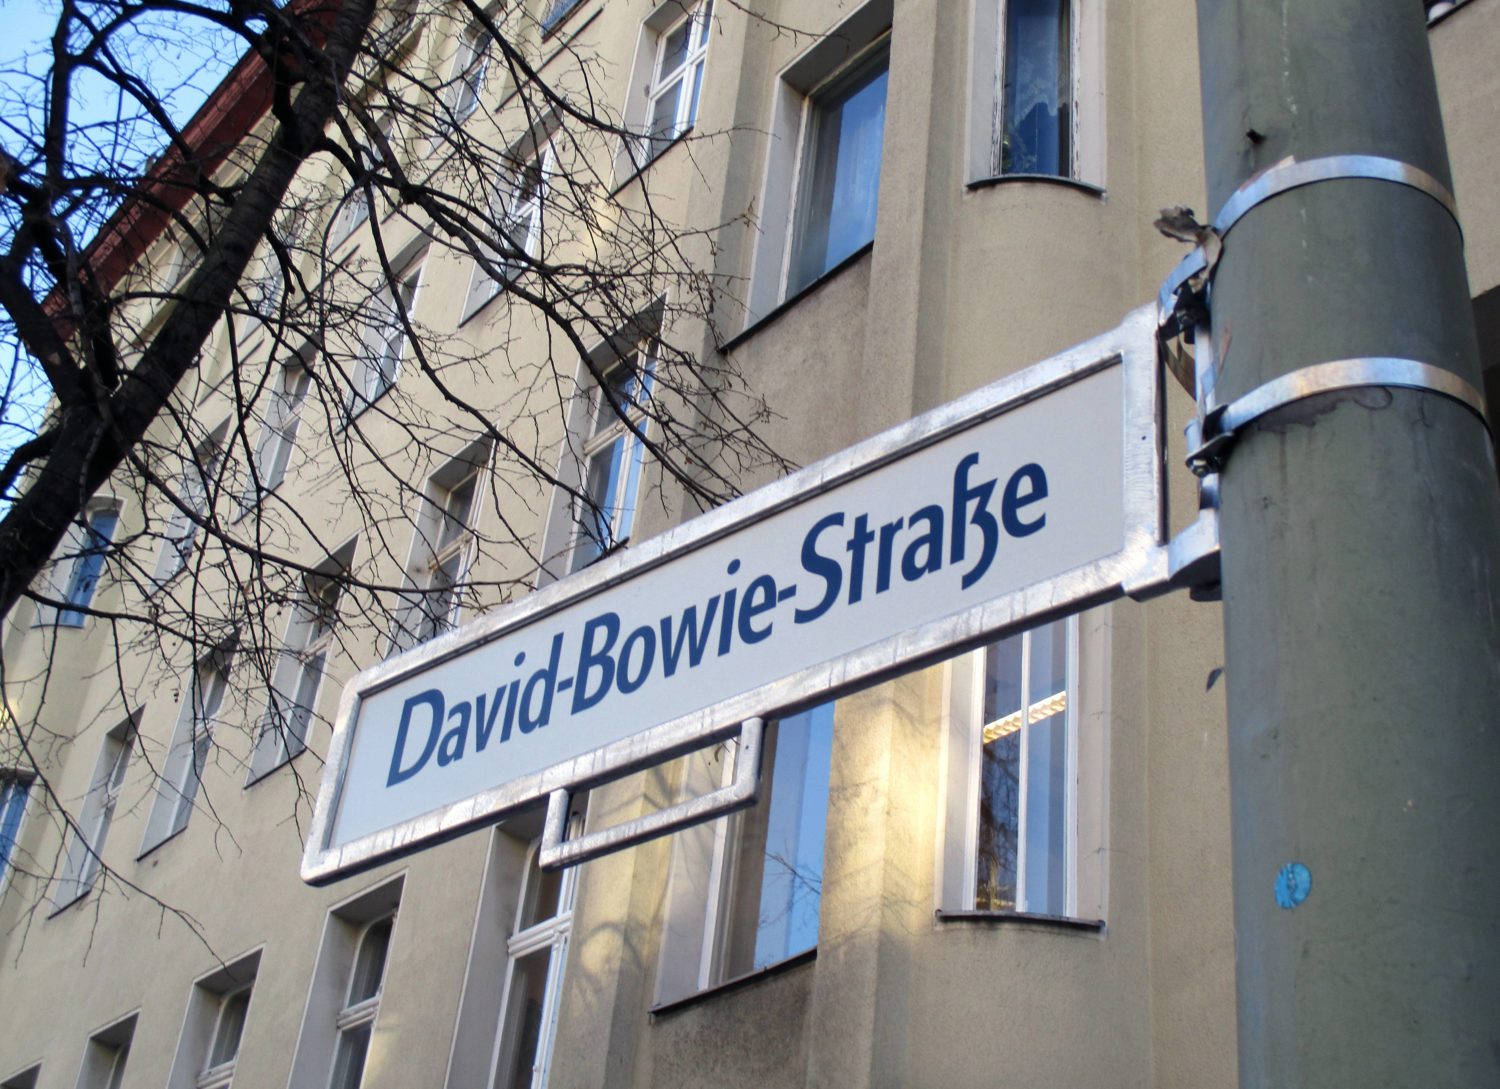 David-Bowie-Straße: Das Schild wurde der David-Bowie-Straße wurde kurz nach Bowies Tod im Januar 2016 vor dem Haus in der Hauptstraße 155 angebracht. Foto: Imago/Peter Homann